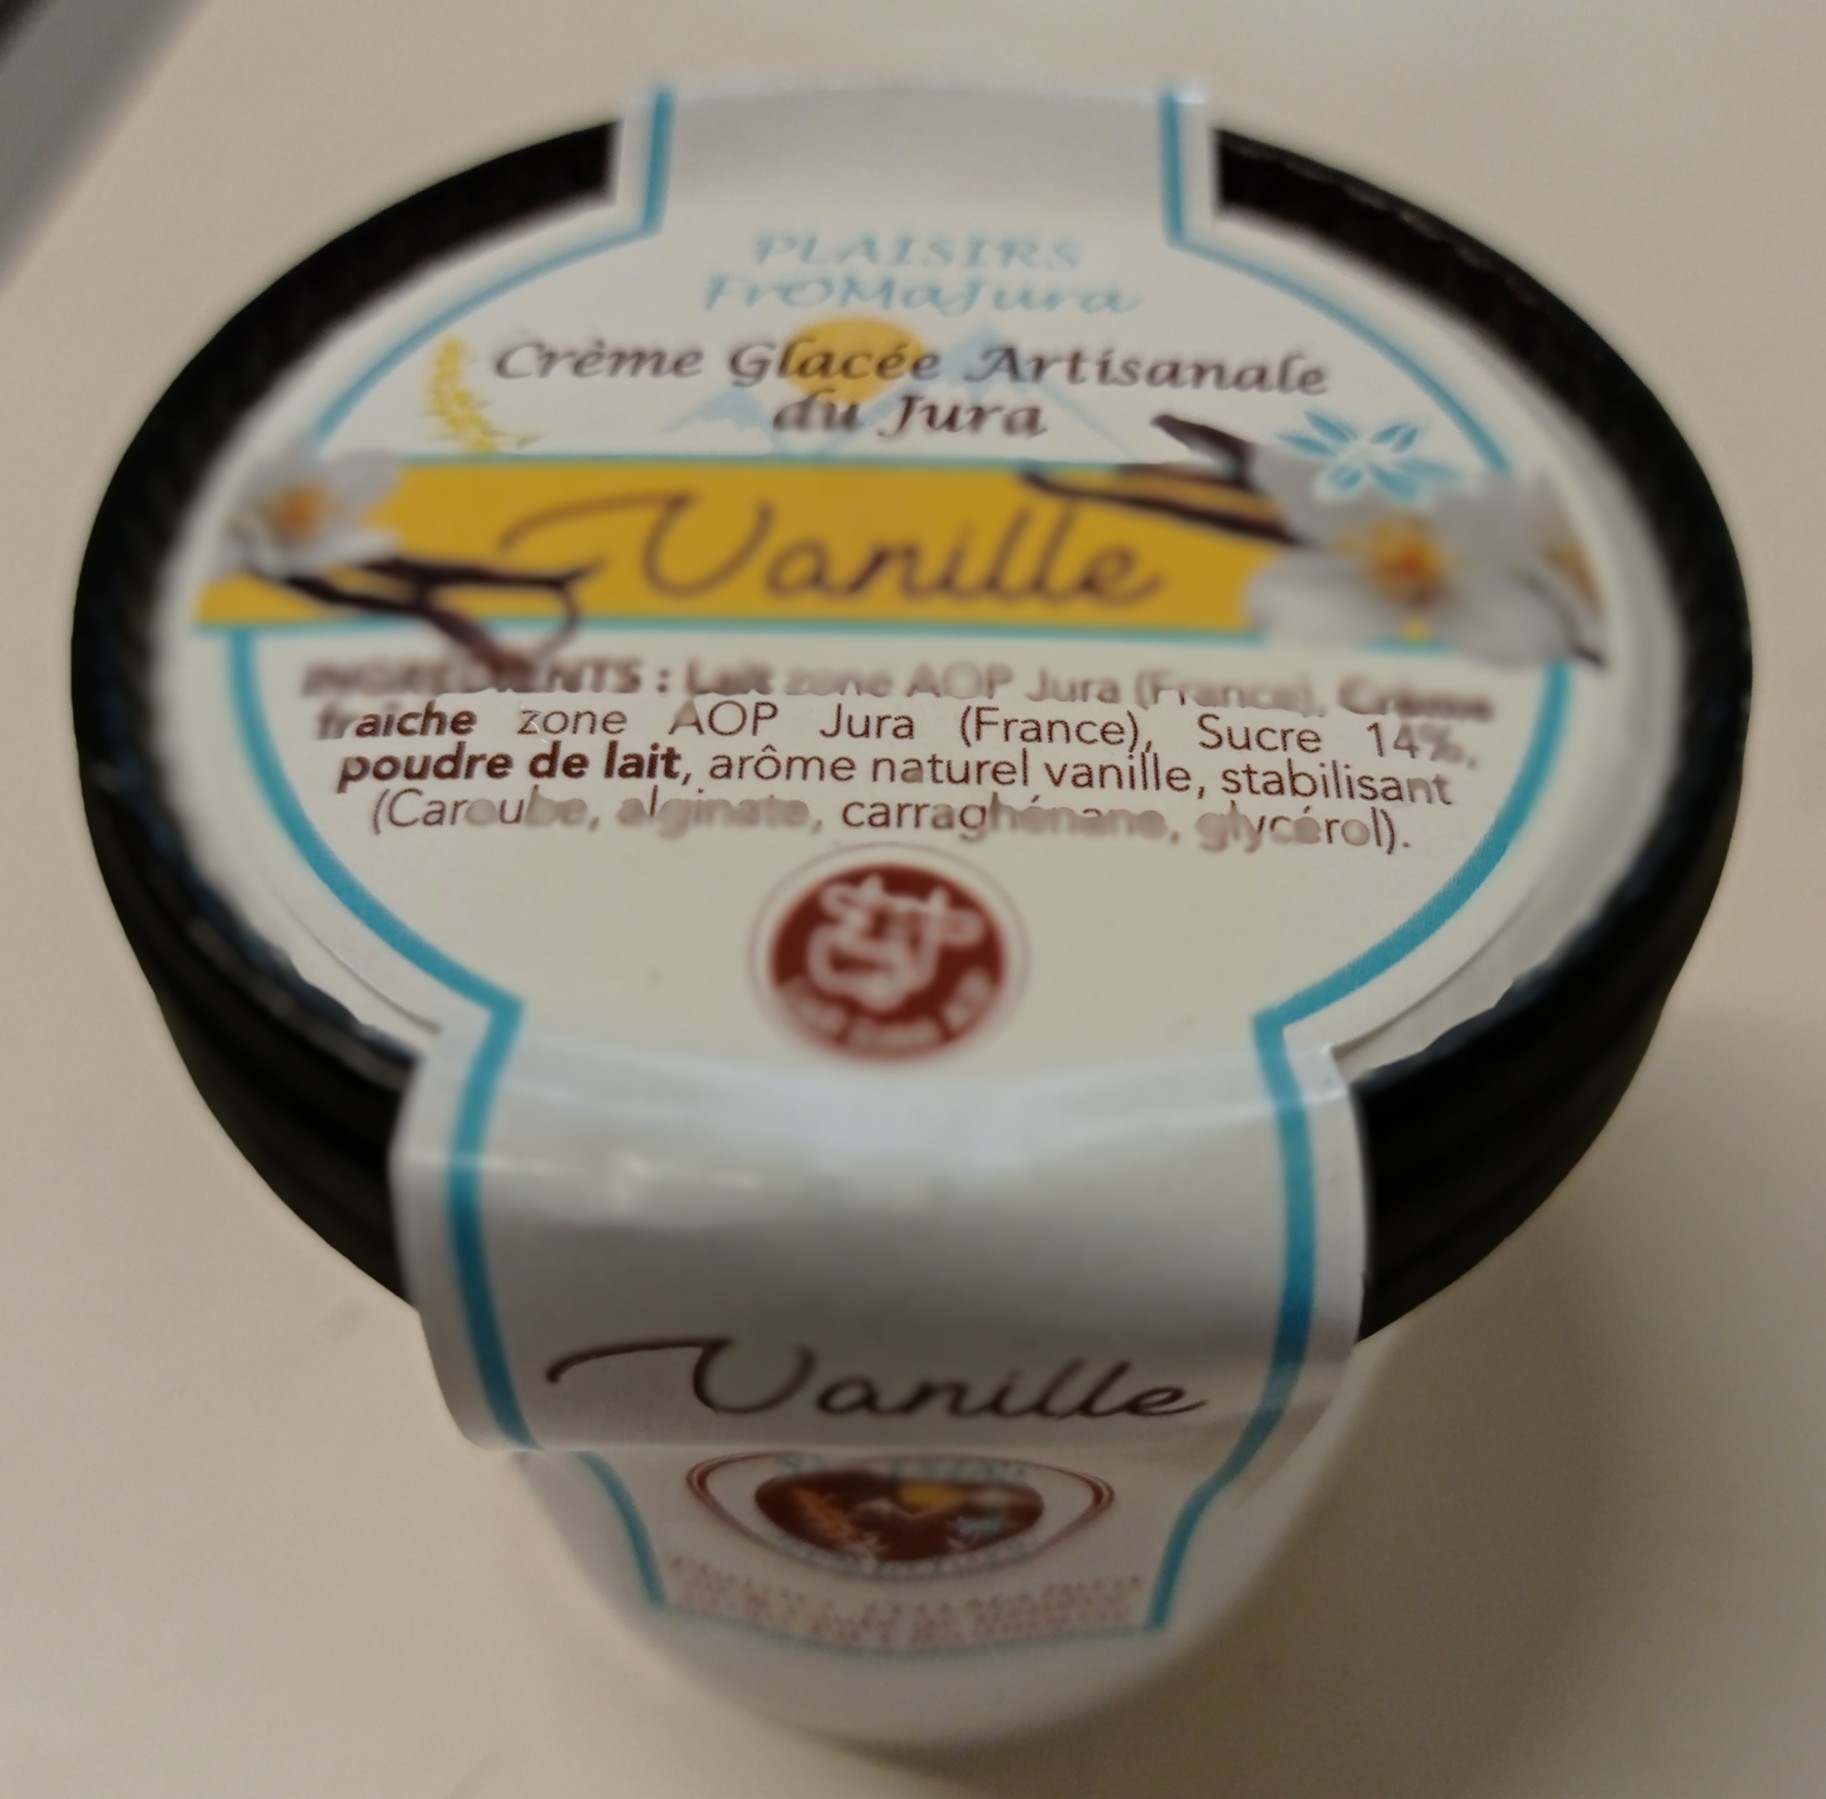 Crème Glacée Vanille - Crèmes Glacées artisanales, lait entier et